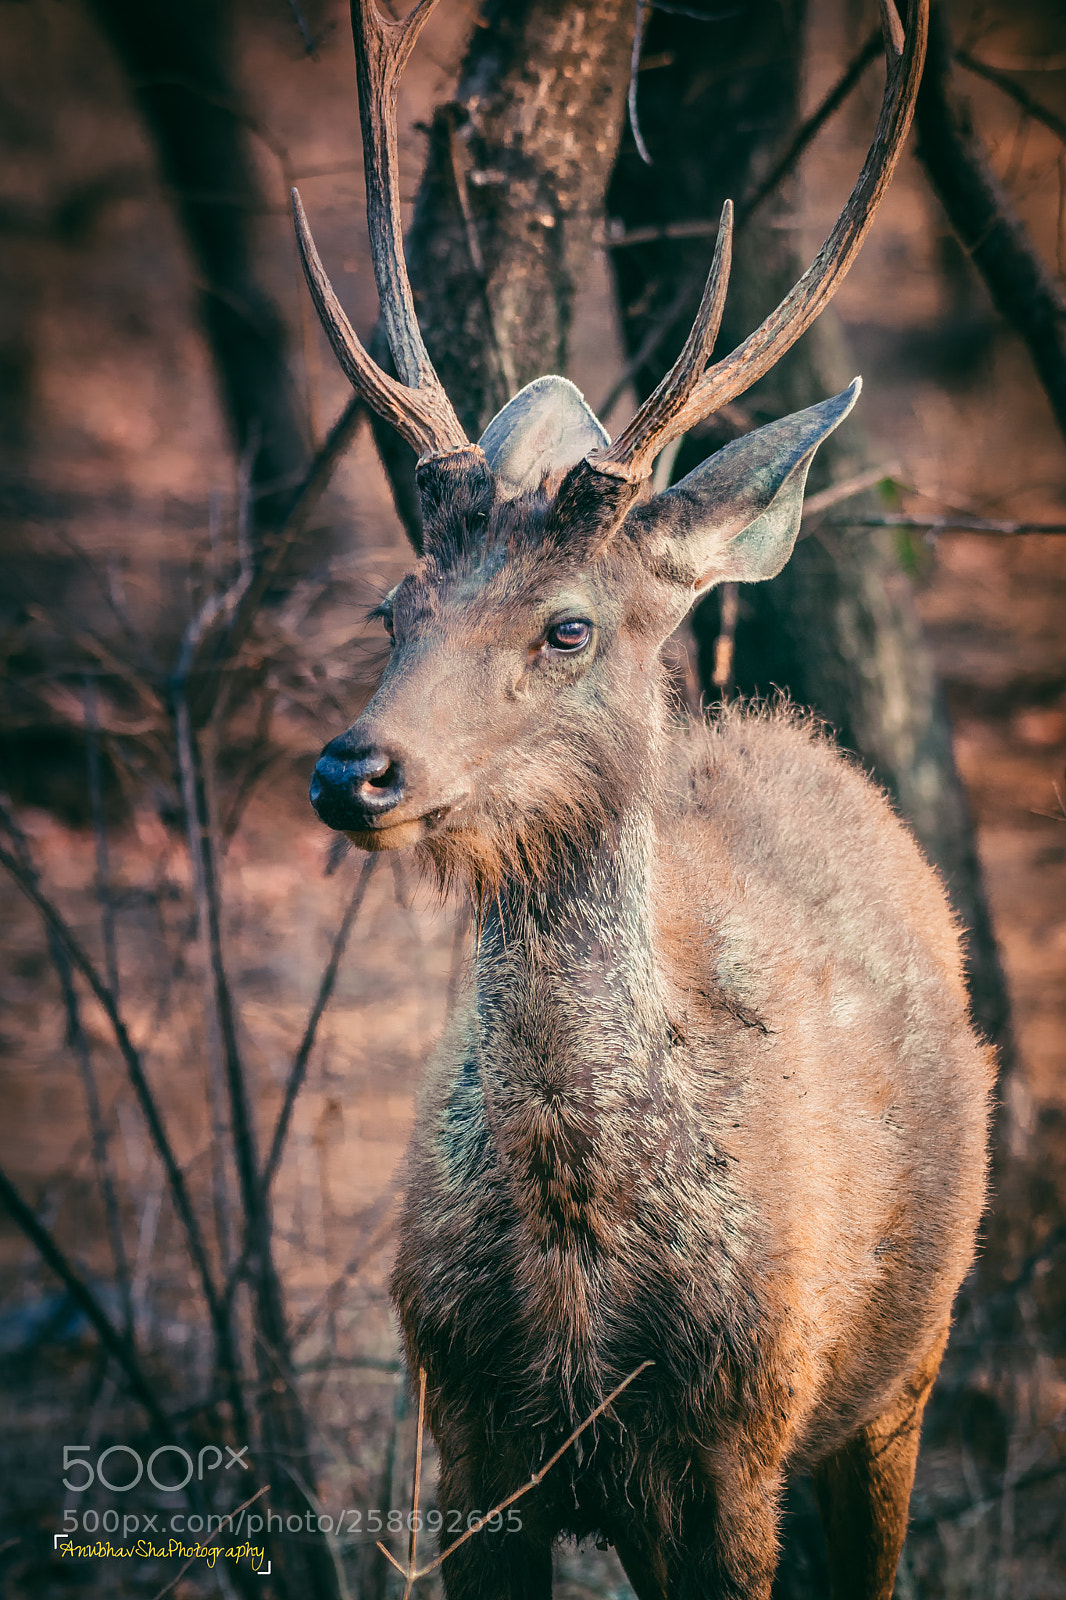 Nikon D5200 sample photo. Sambar deer photography